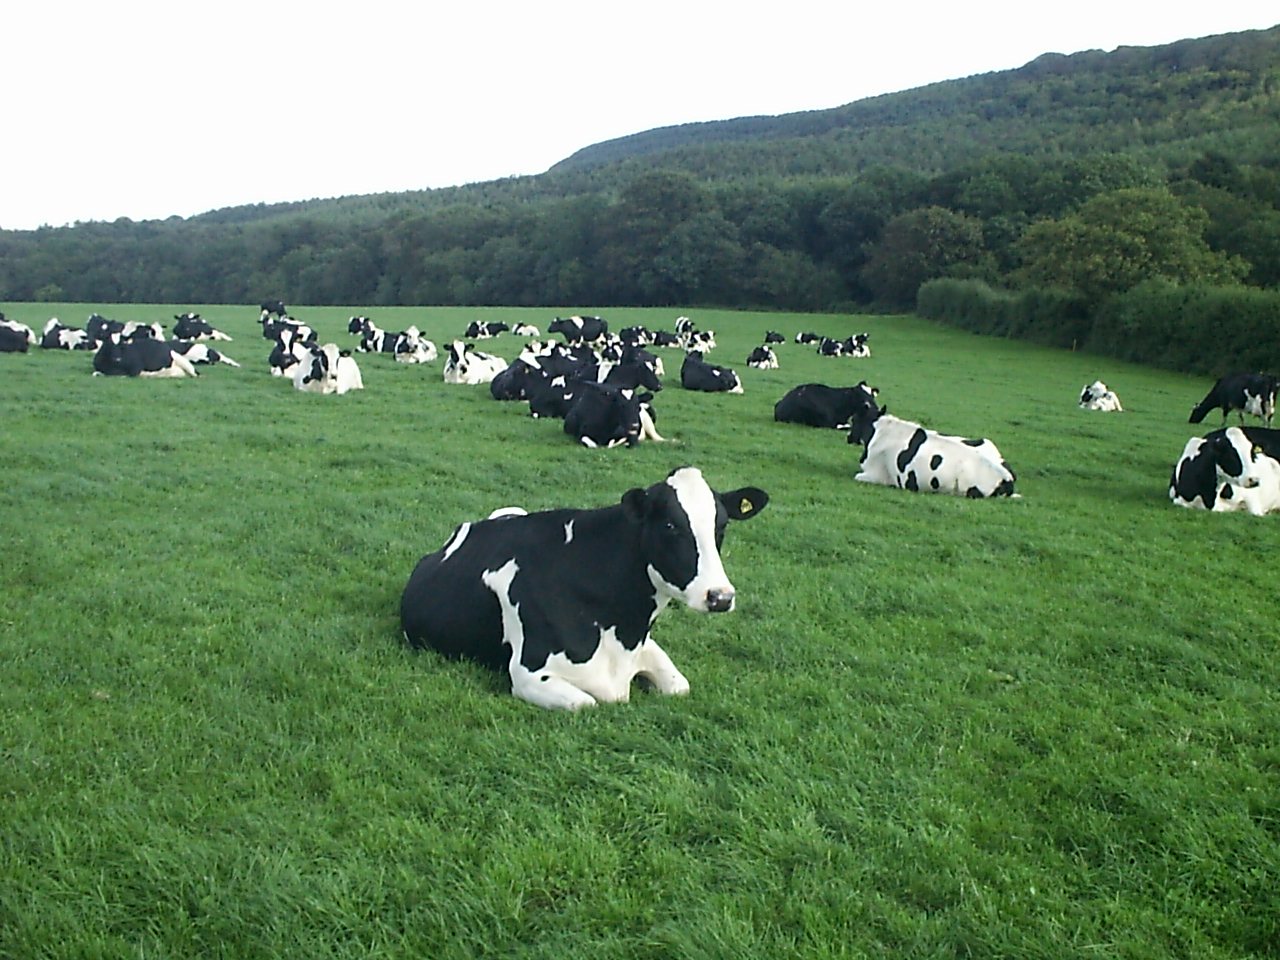 cows-in-field2.jpg